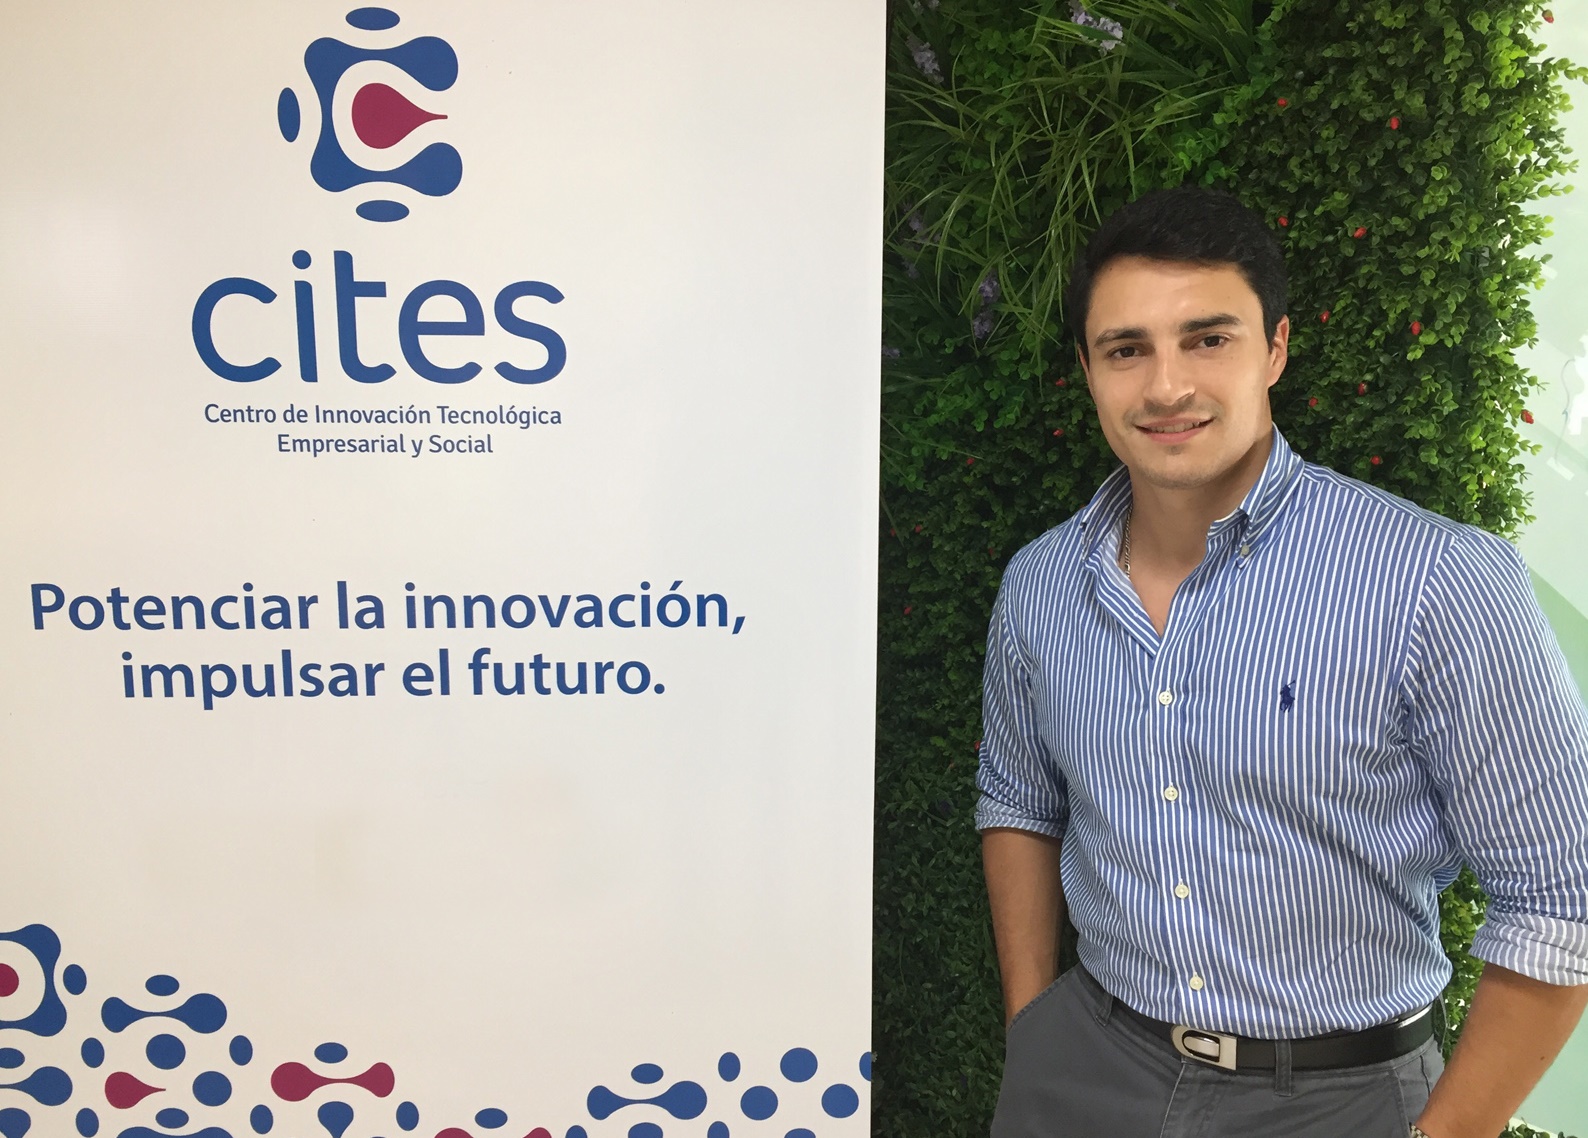 Esntrevista a Nicolás Tambucho, graduado de Biotecnología